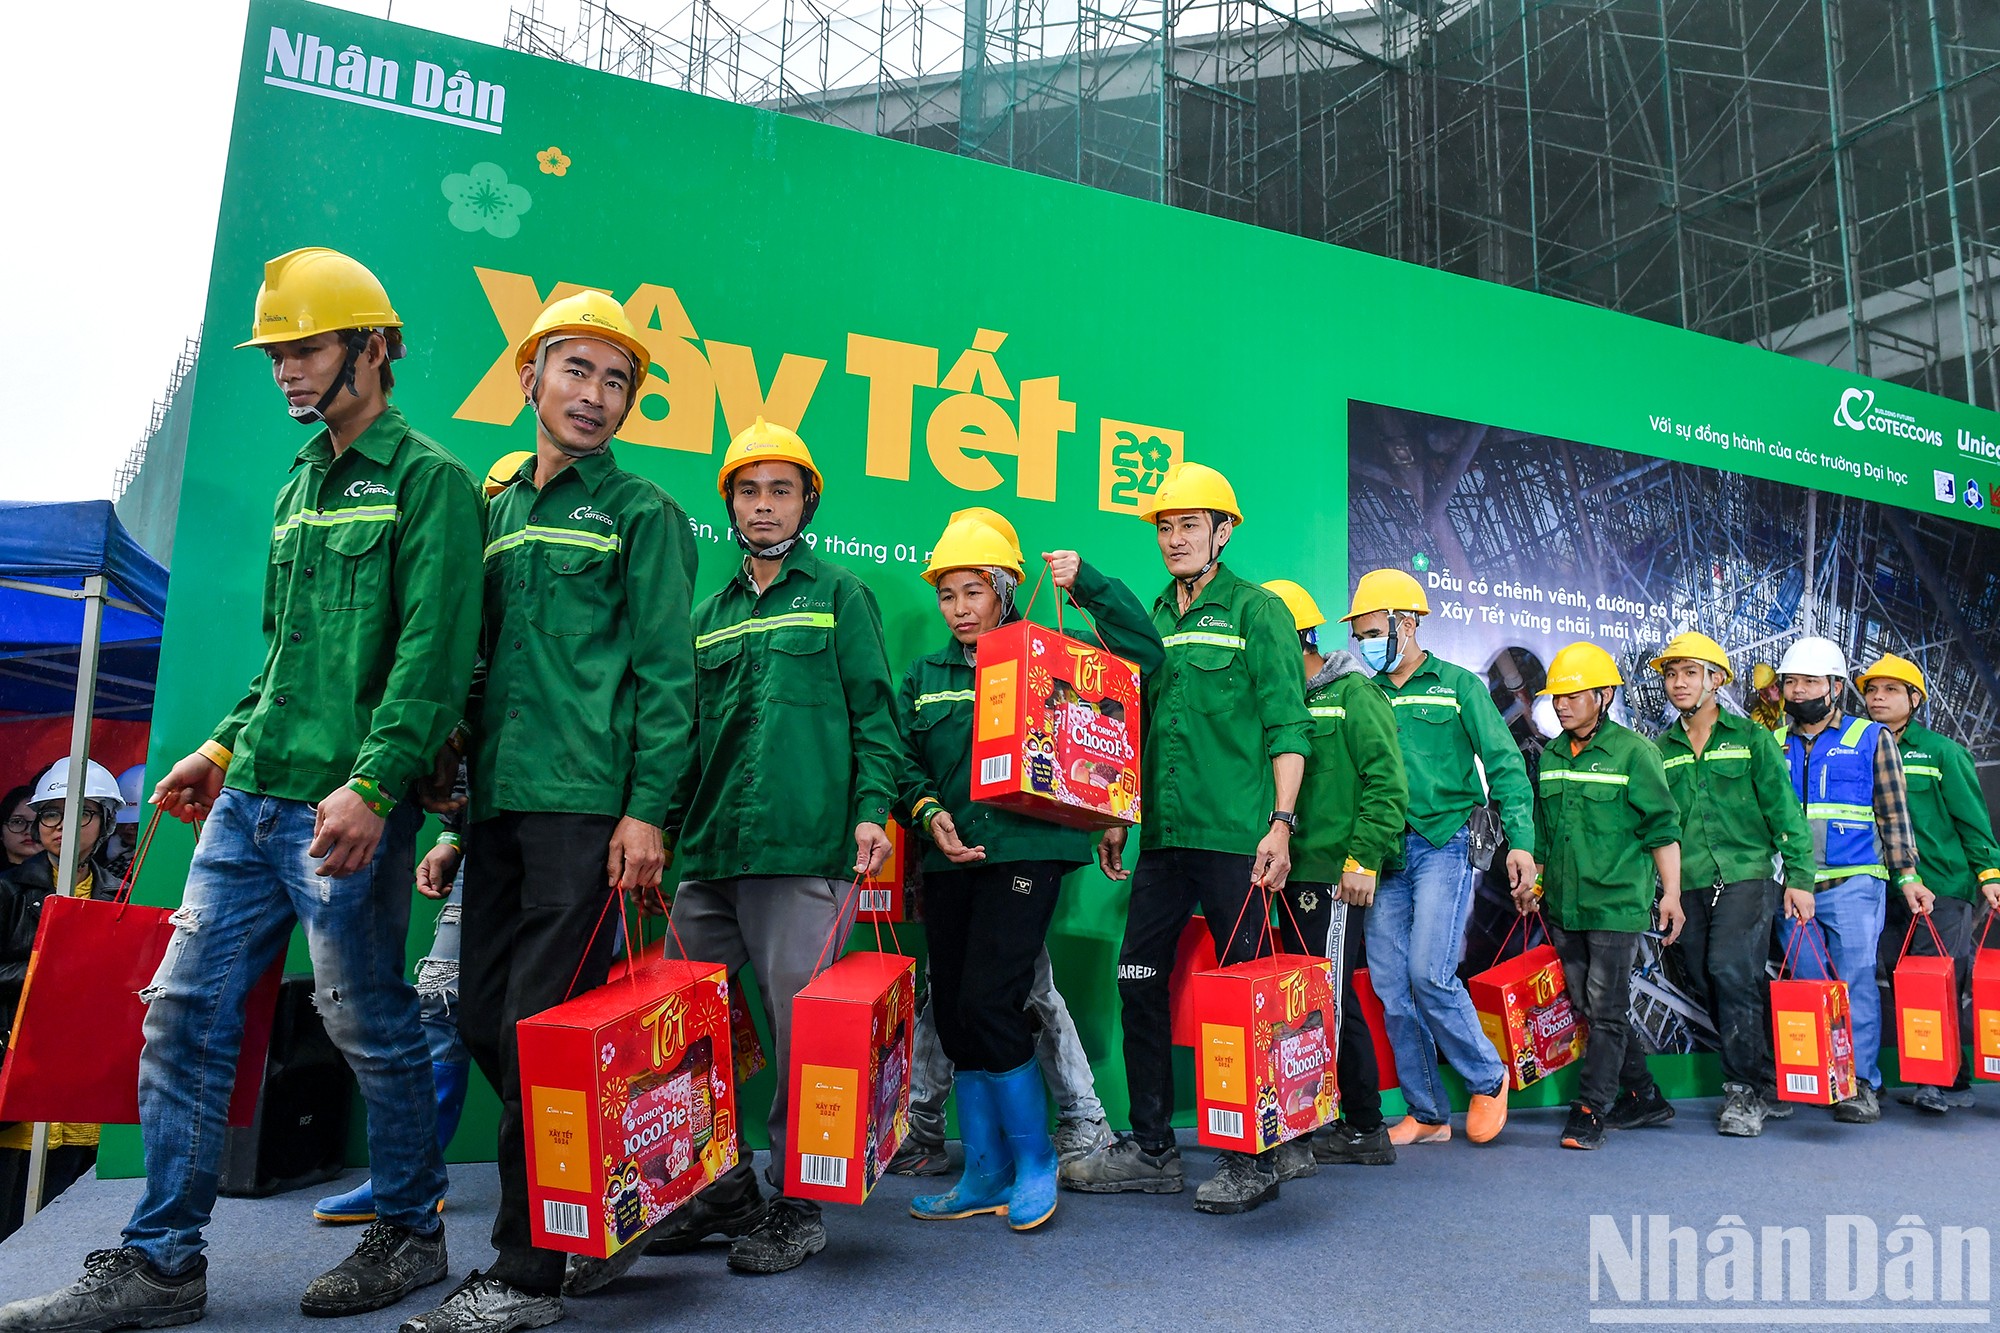 [Foto] Periódico Nhan Dan coordina programa de apoyo a trabajadores en ocasión del Tet